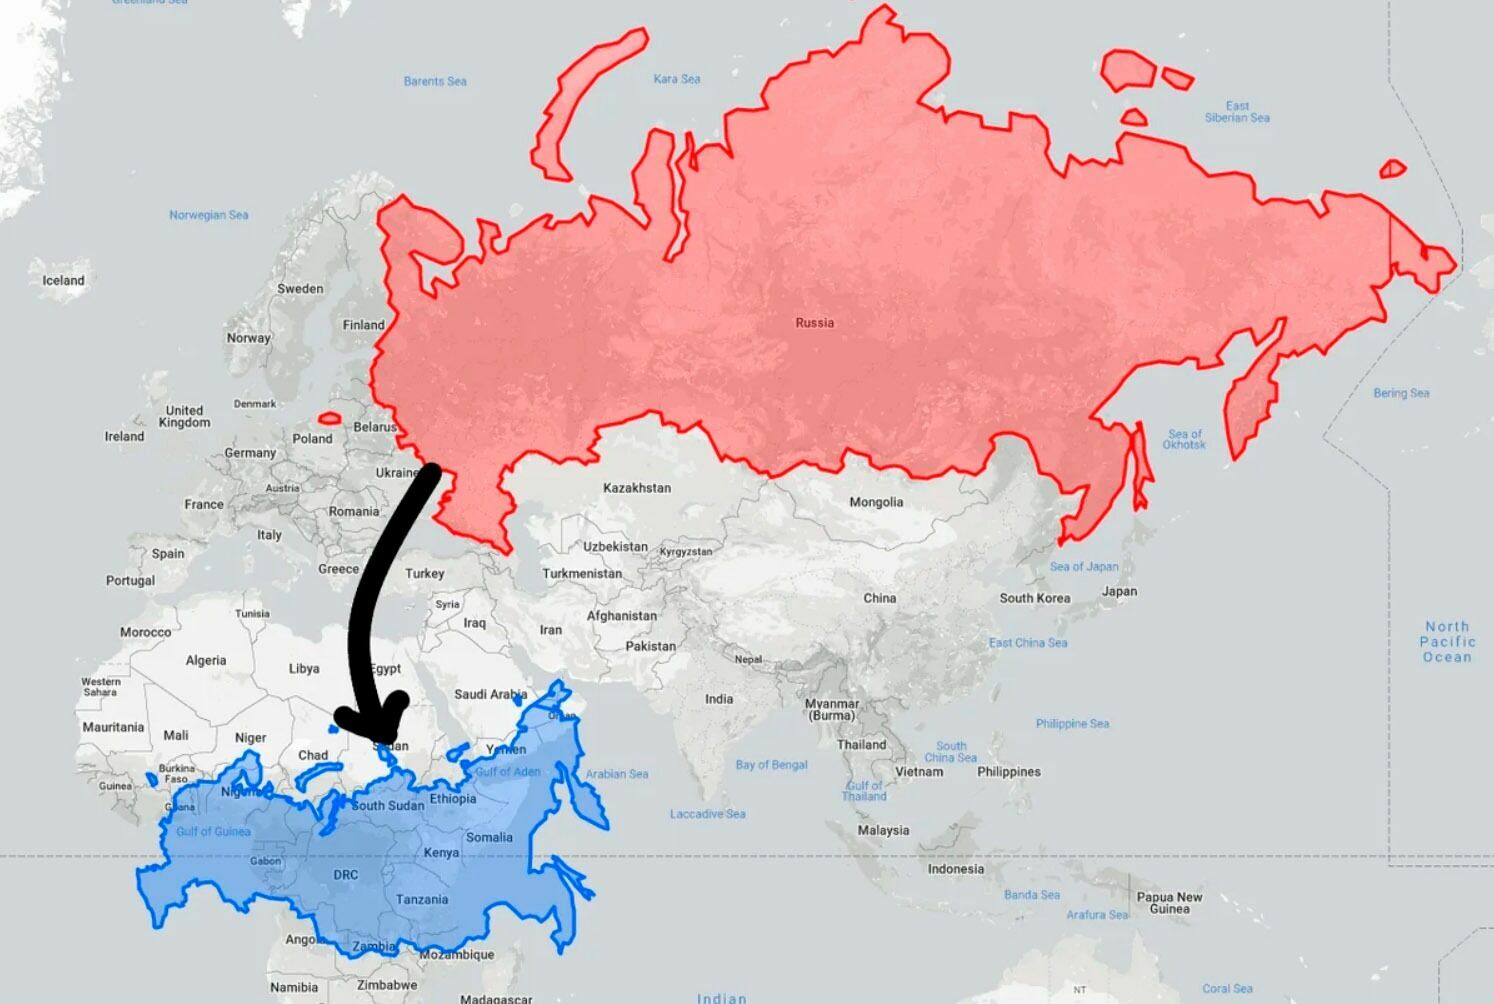 Новая карта россии 2024